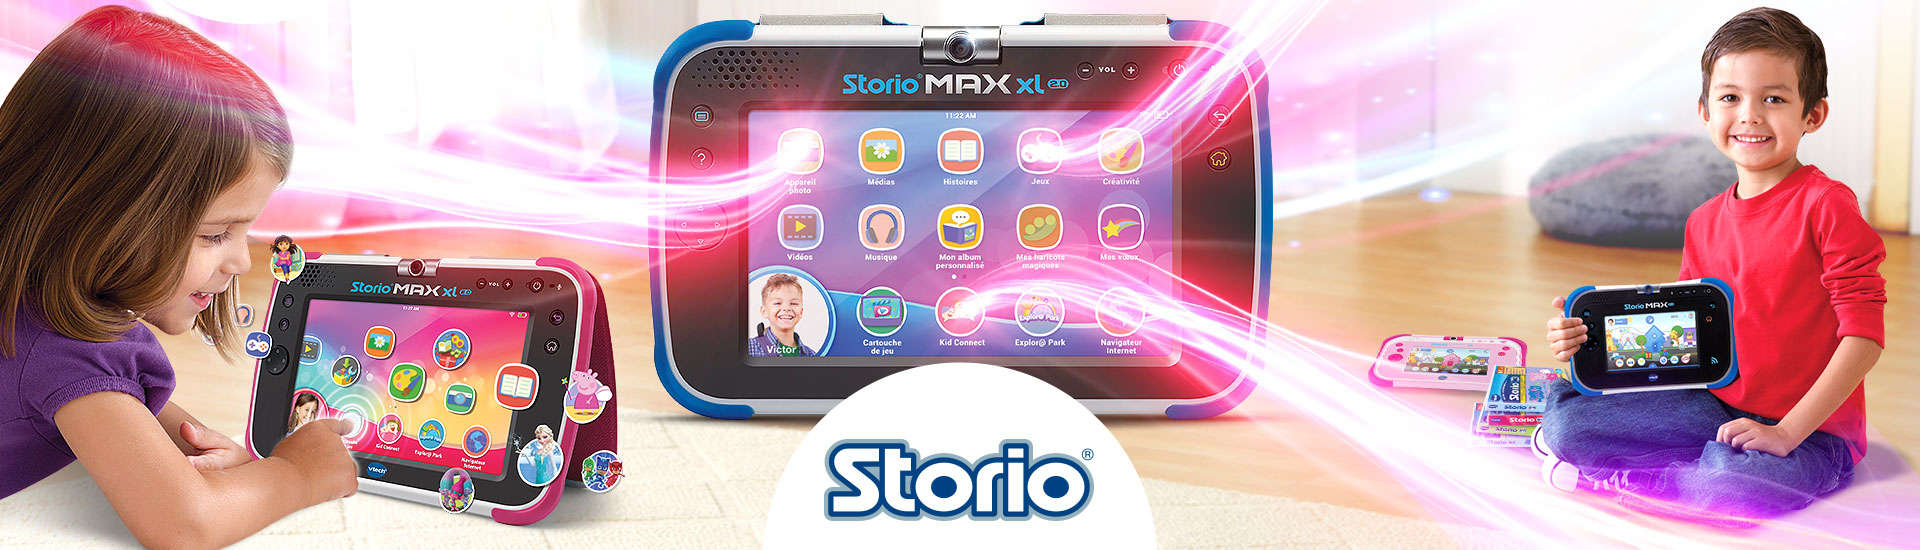 Tablette storio max 2.0 5 rose, jeux educatifs